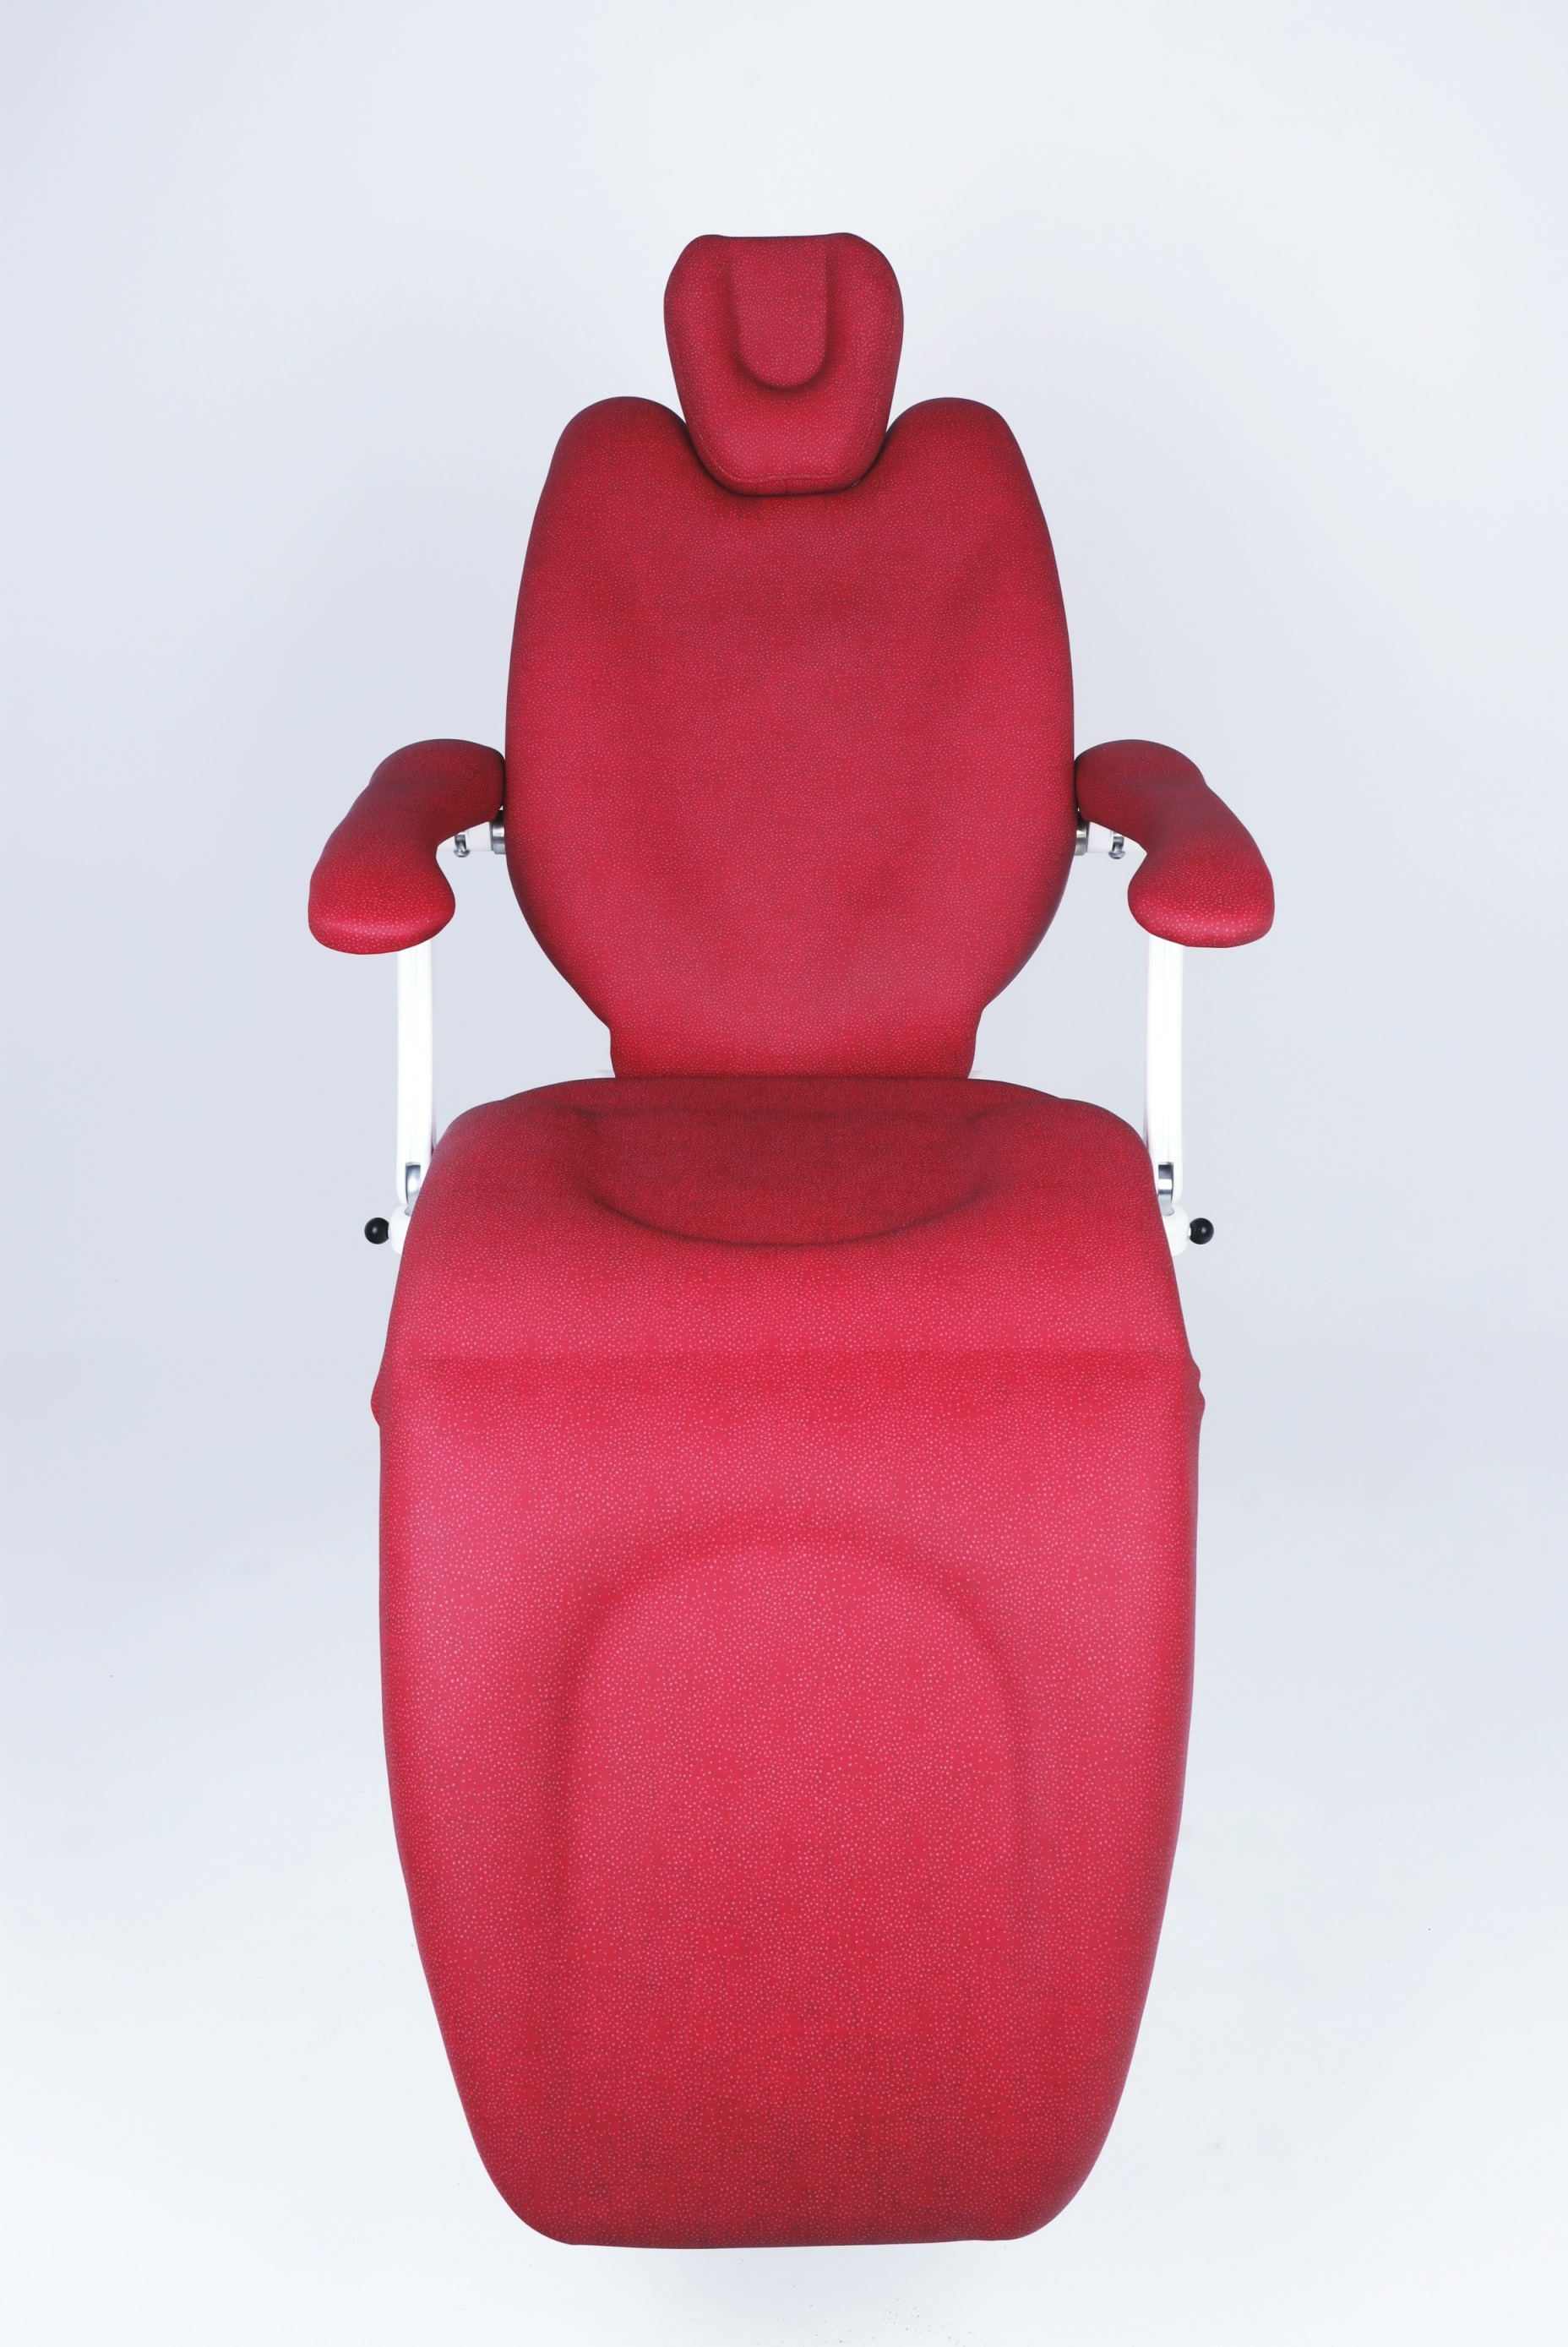 Fotele operacyjne (zabiegowe) ANATOM  Fotel zabiegowy ANATOM HOSPITAL 3010